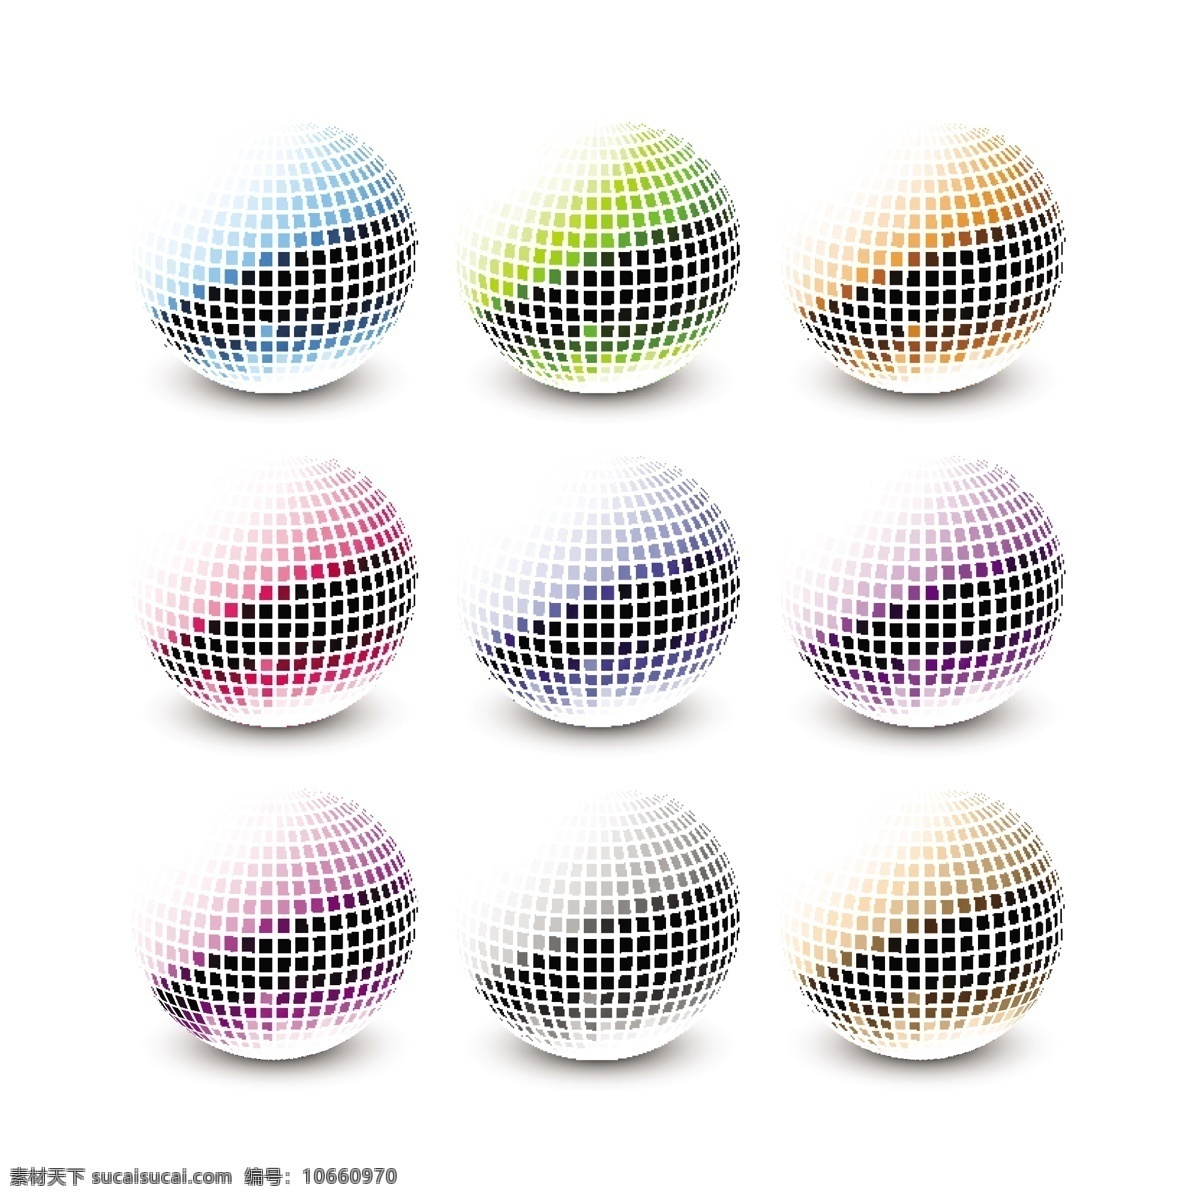 彩色 镜面 球 收藏 抽象 绿色 蓝色 粉红色 多彩 圆 现代 装饰 镶嵌 球面 抽象设计 物体 有光泽 白色